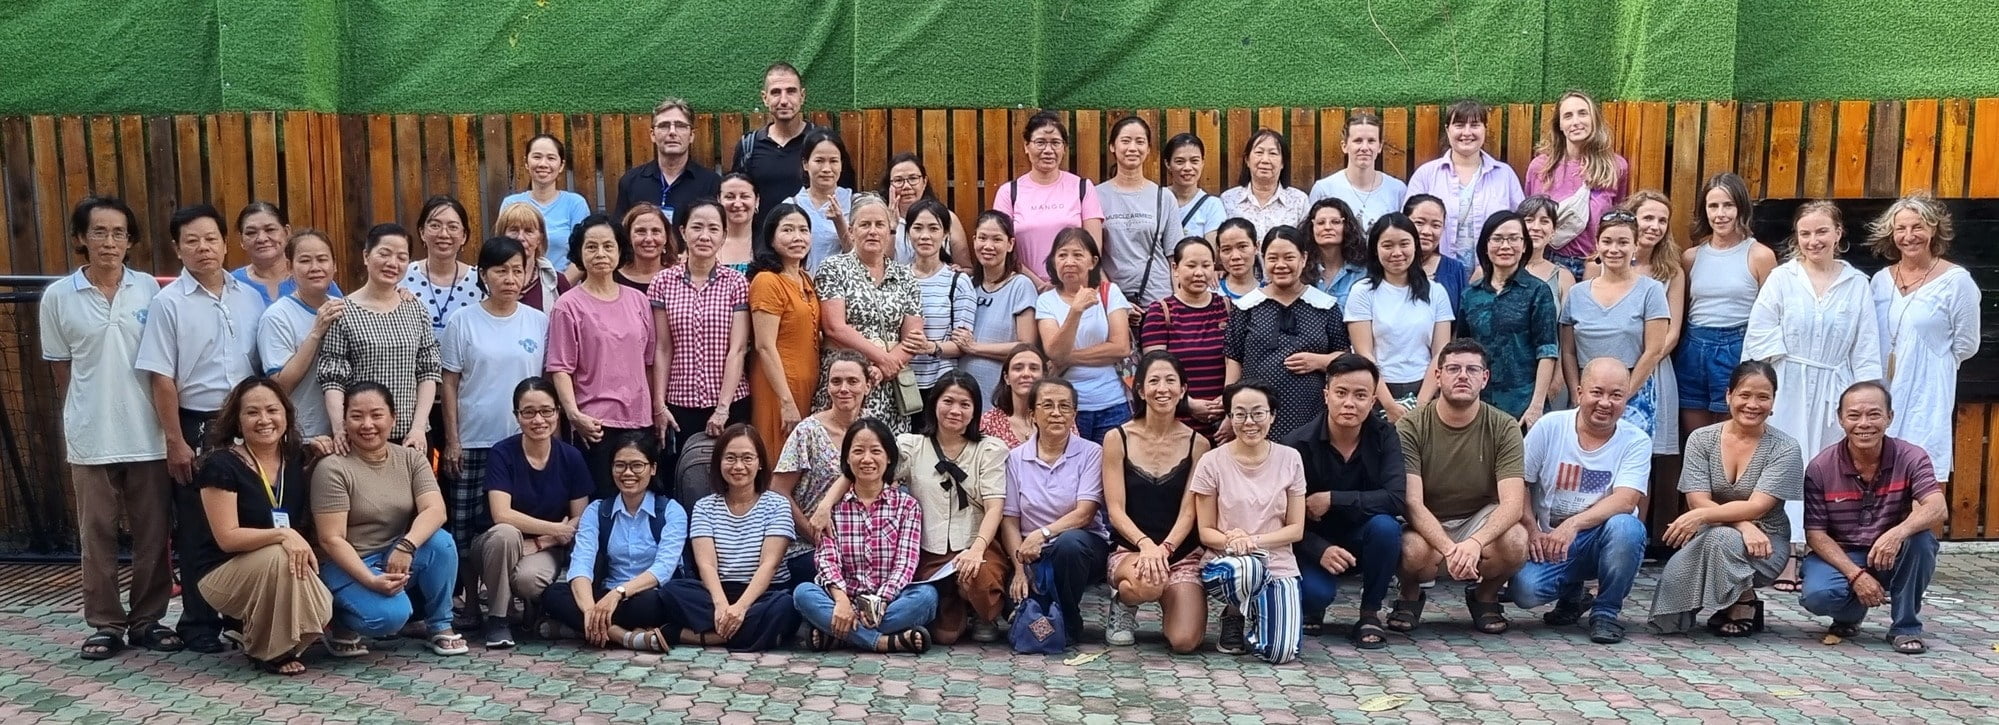 L'equipe boule et billes ecole francaise au vietnam les professeurs les employes la direction